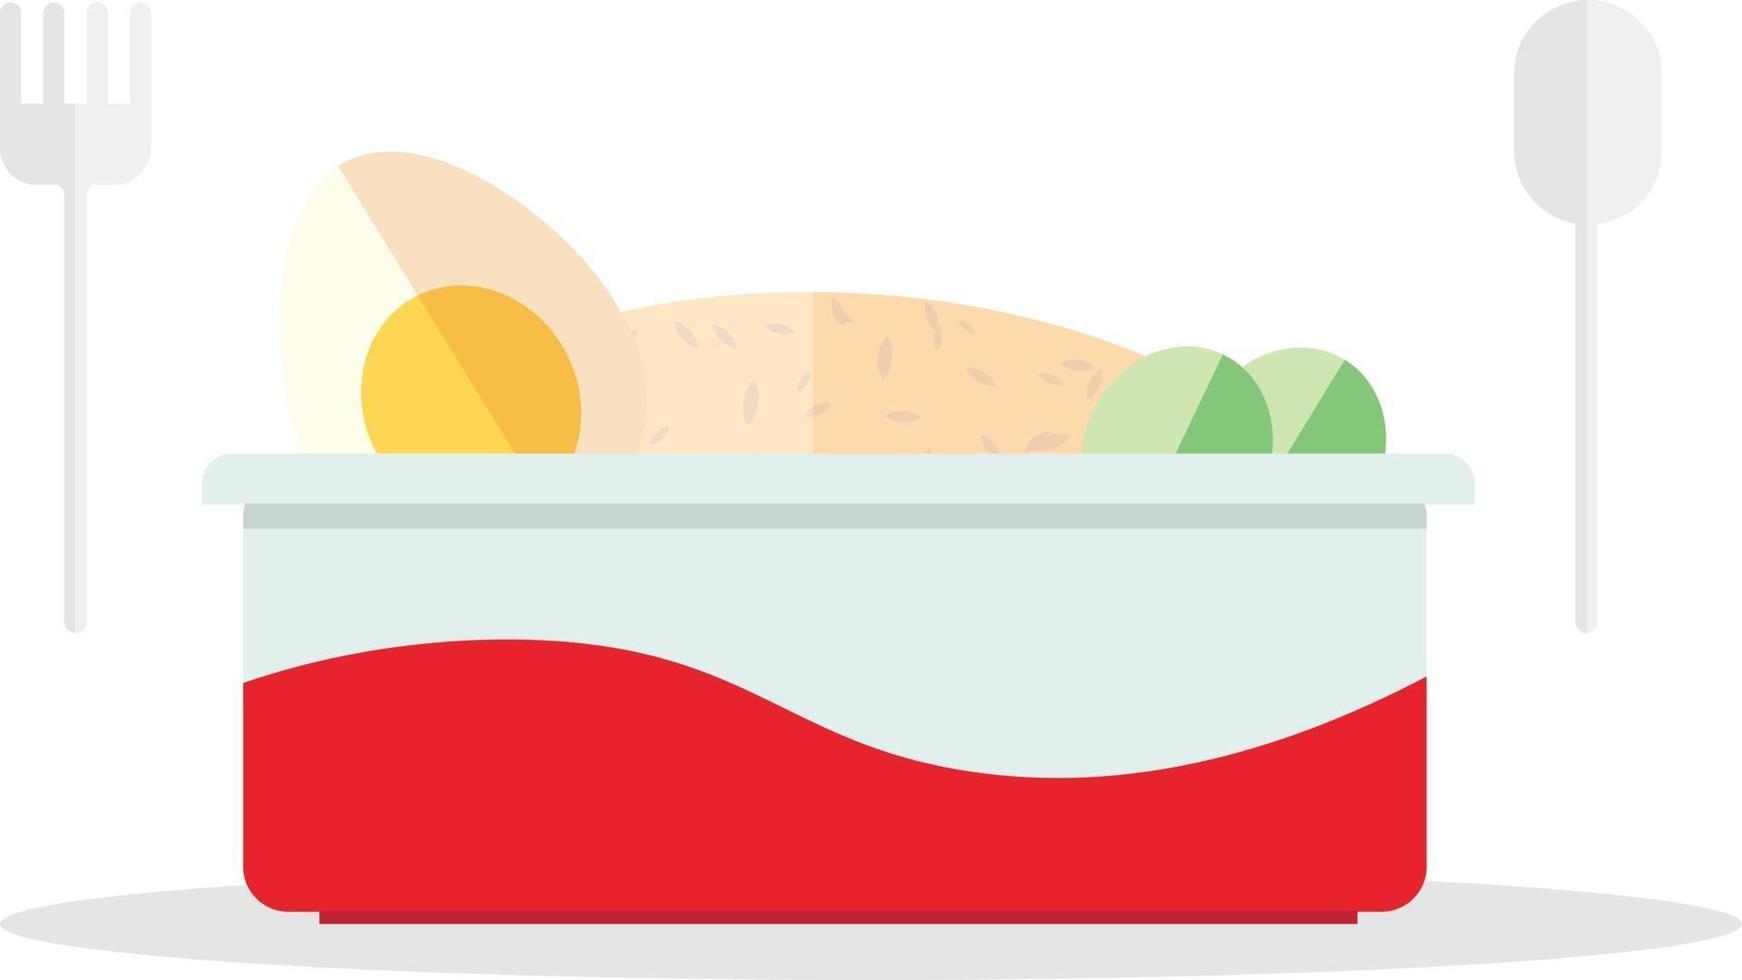 scatola di fast food design piatto con cucchiaio di plastica e folk.pronto da mangiare scatola di riso fastfood per pranzo vettore.riso fritto con uova e verdure in scatola vettore